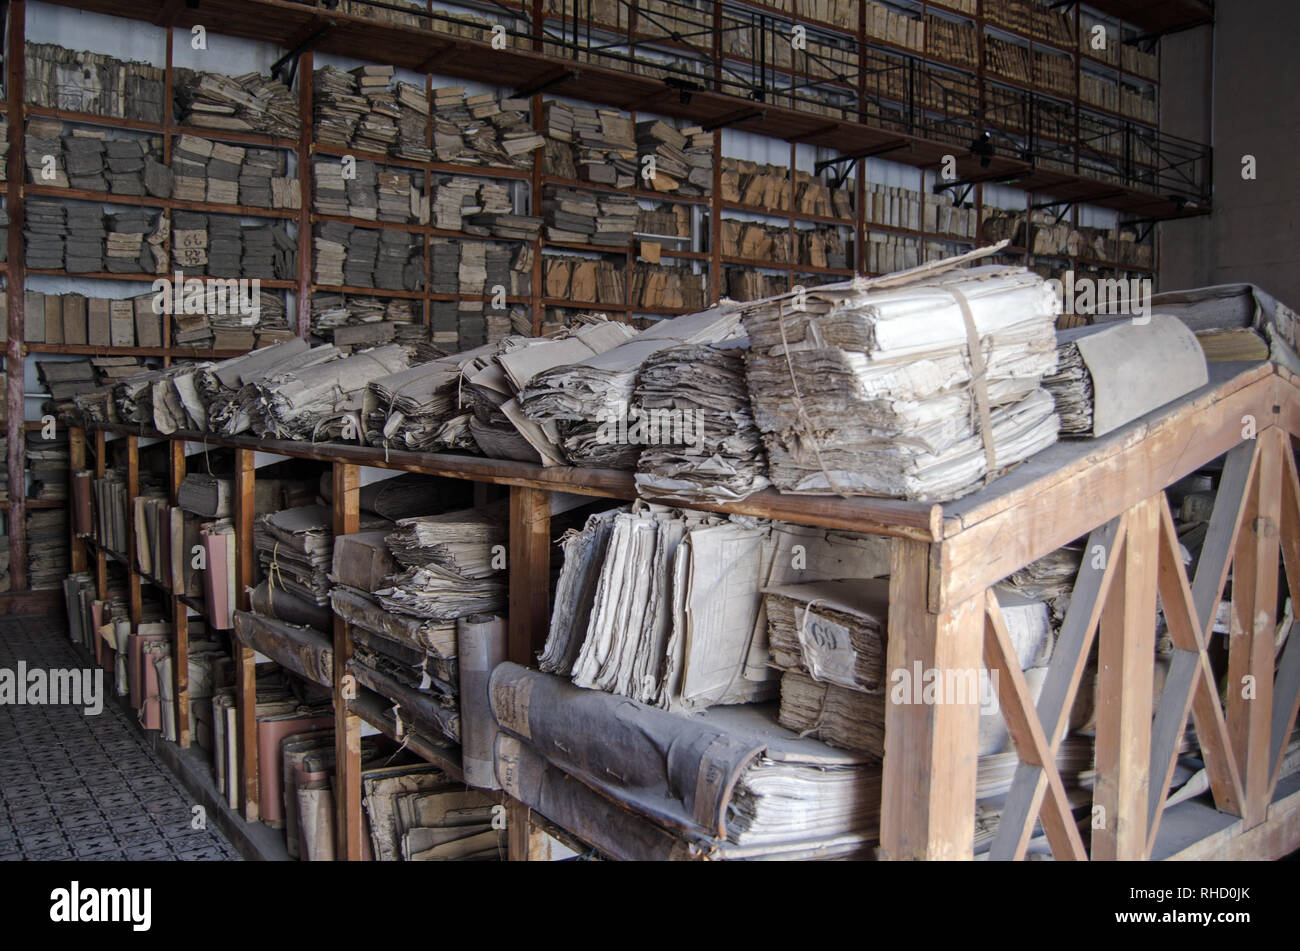 PALERMO, Italia - 16 de junio de 2018: Paquetes de viejos papeles y archivos apilados en estantes pertenecientes a los archivos del Estado de Palermo, Sicilia. Papeles dating Foto de stock